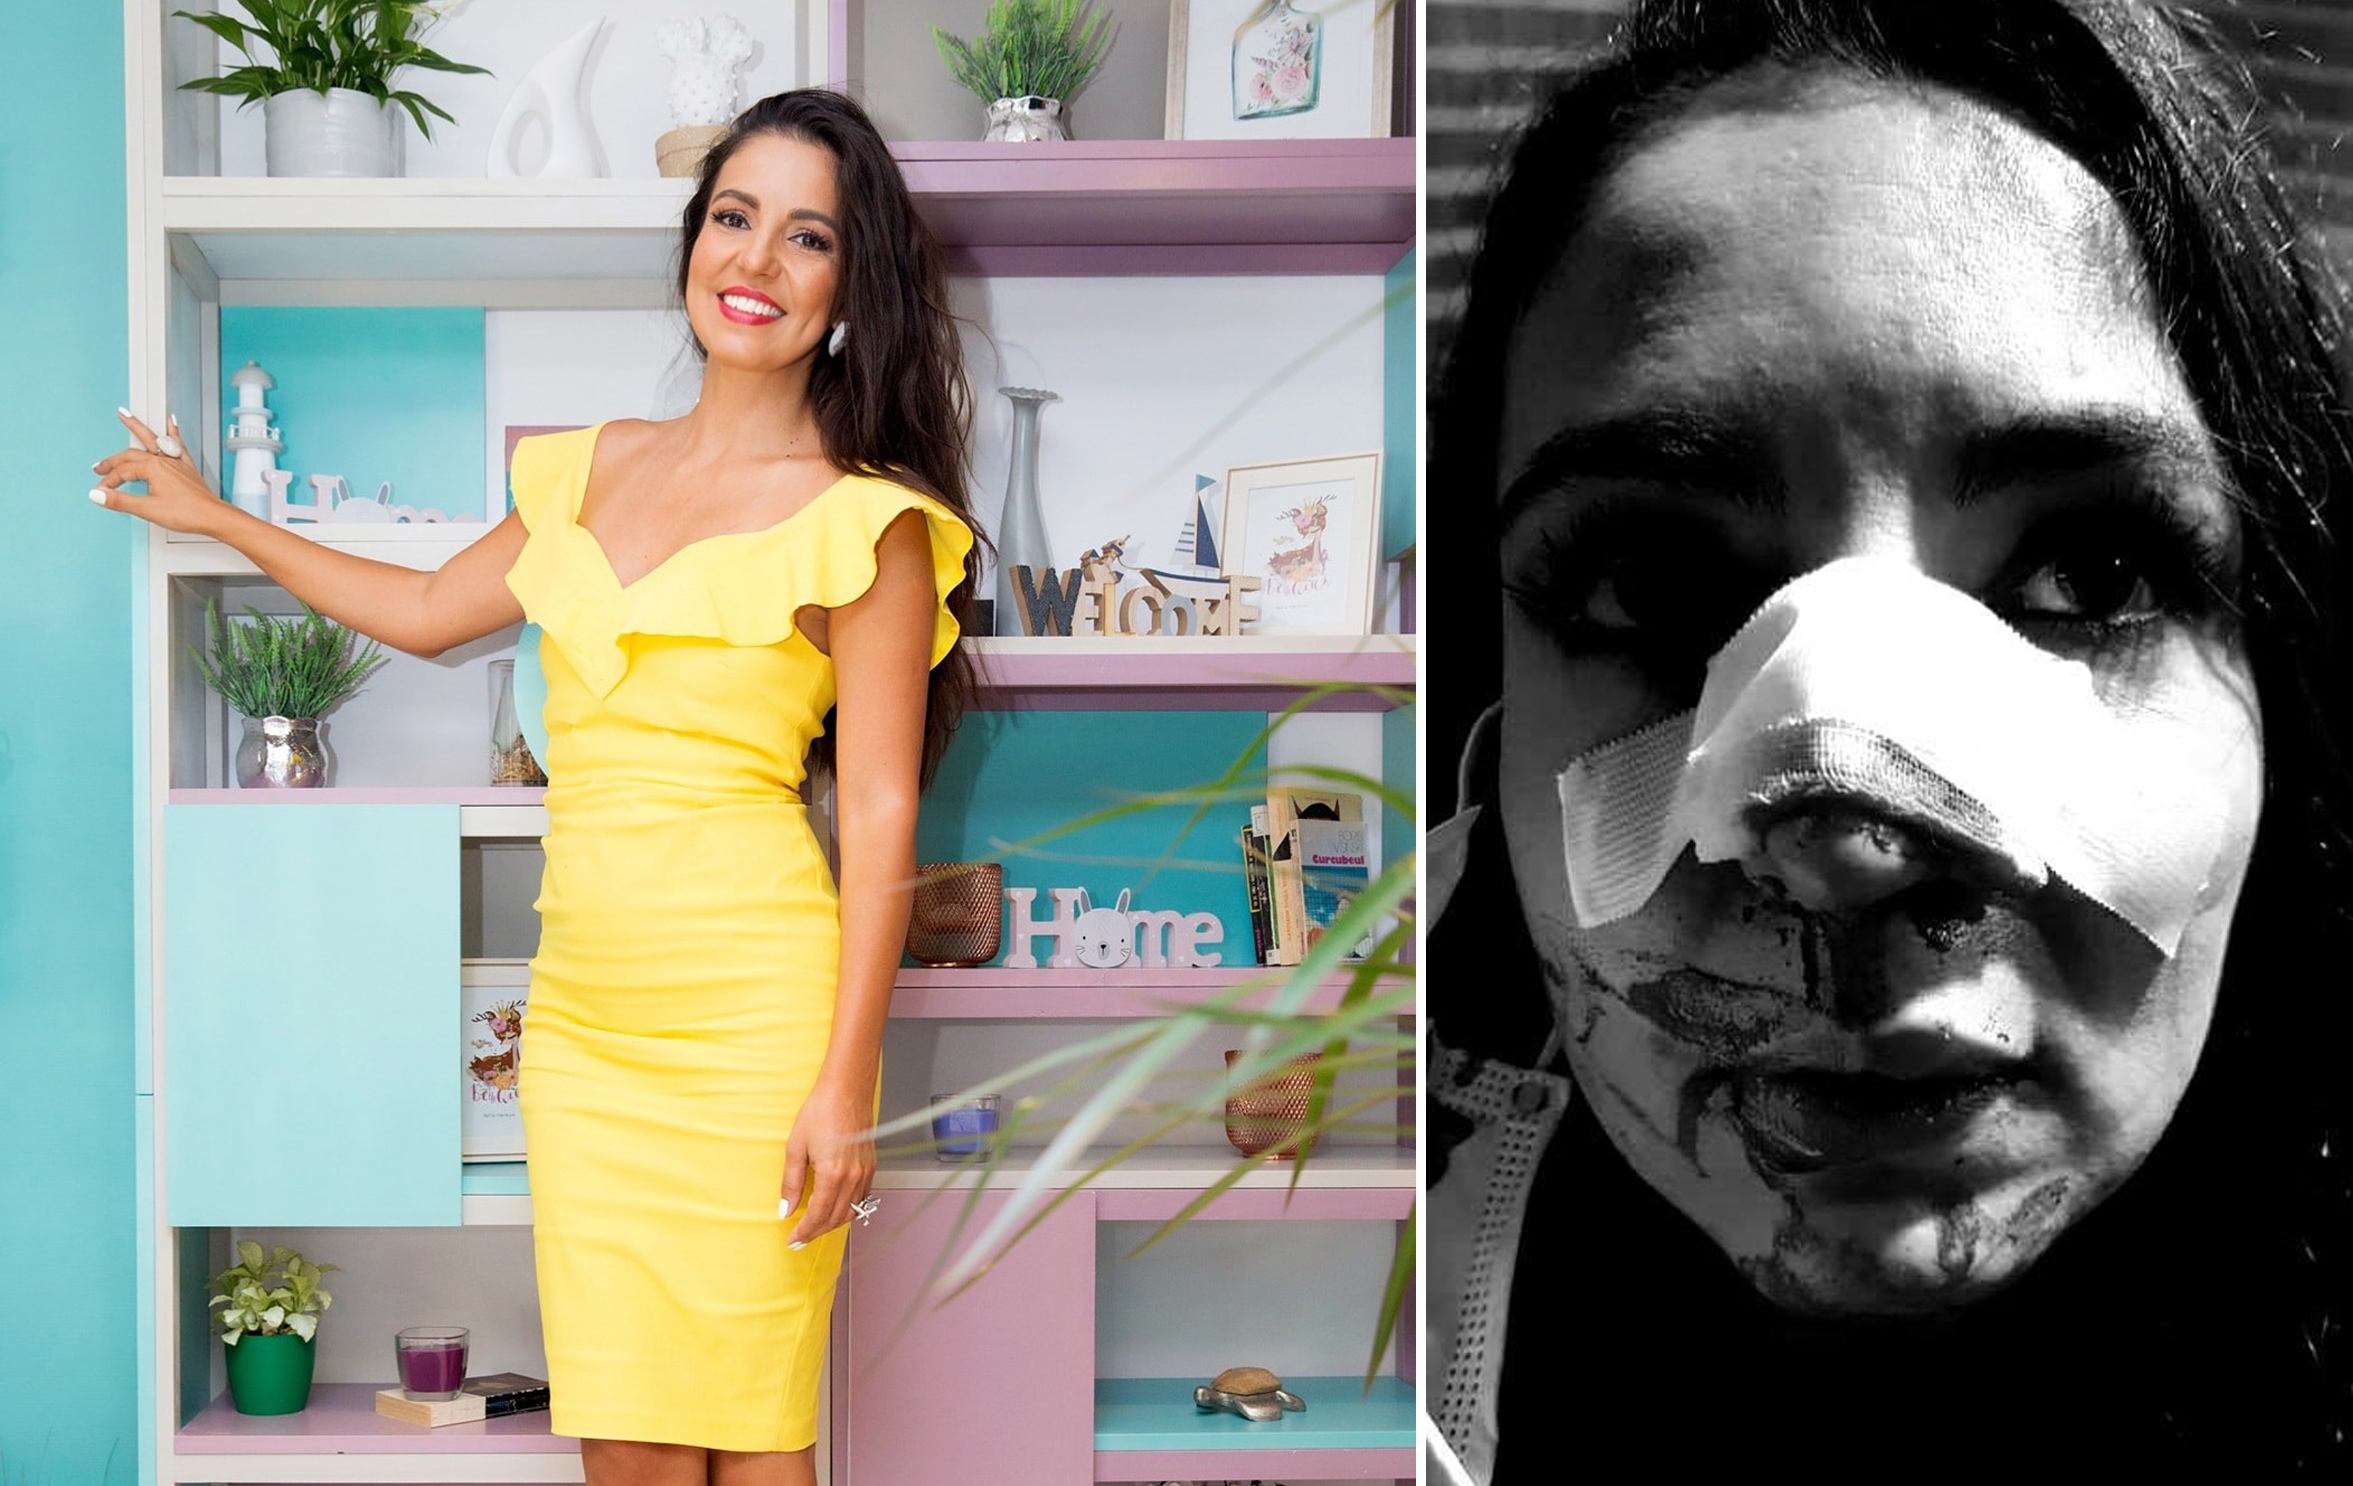 Cristina Joia a fost lovită cu un pumn în față într-un magazin